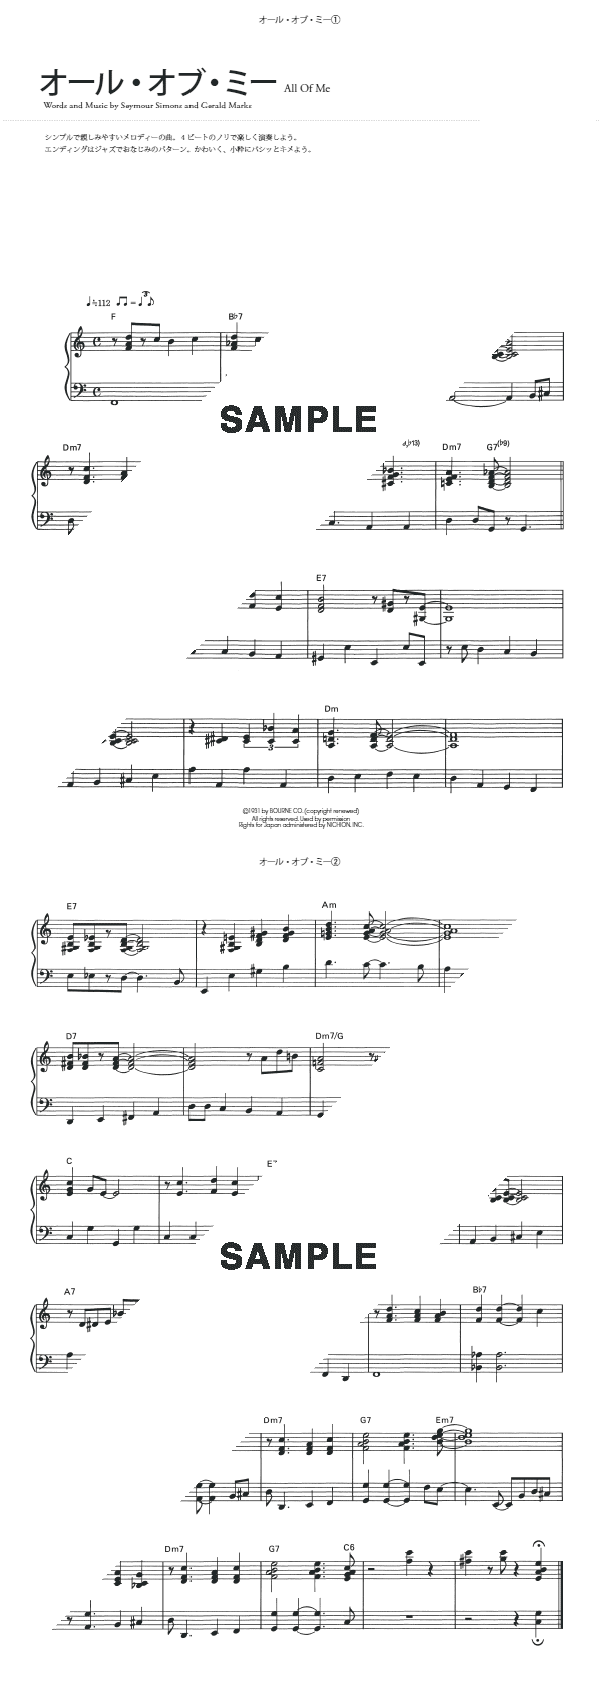 楽譜 All Of Me オール オブ ミー Seymour Simons シーモア シモンズ ピアノ ソロ譜 初中級 Kmp 楽譜 Elise